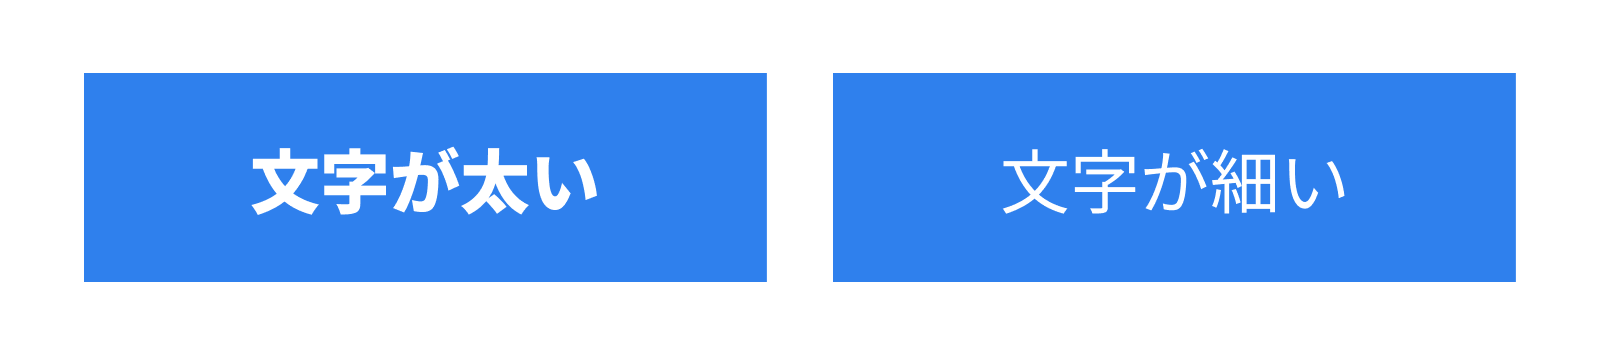 青で塗りつぶされた使いの中の太い文字と細い文字の比較